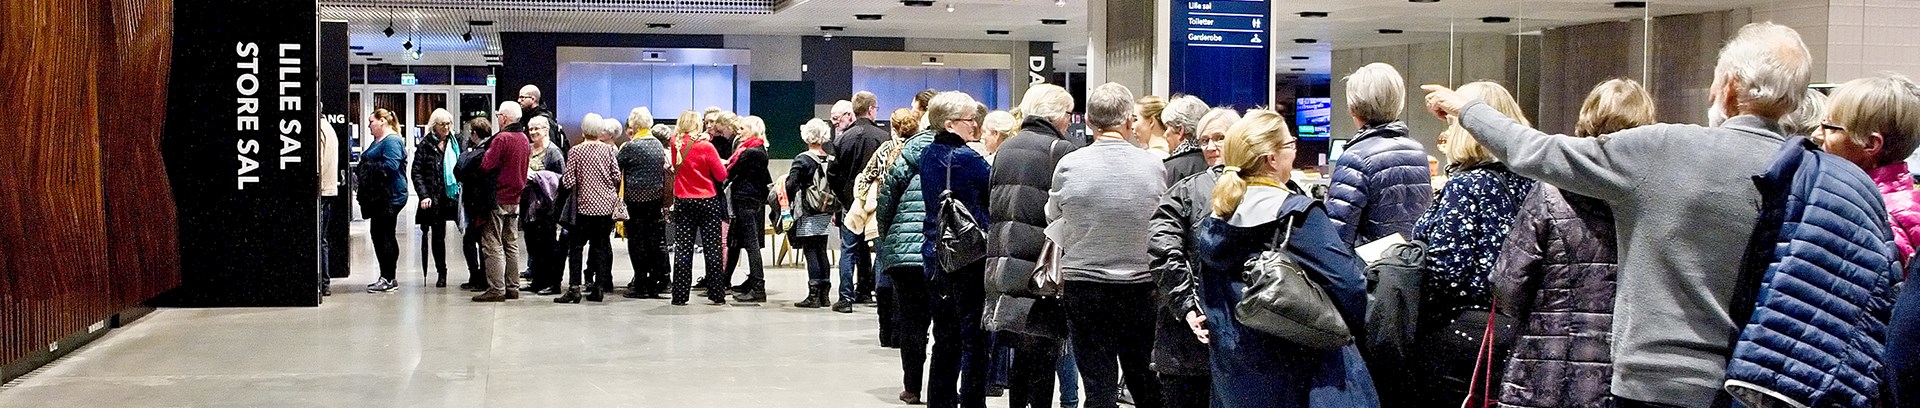 Billede fra Dokk1, hvor mennesker står i kø til foredrag hos FOF Aarhus